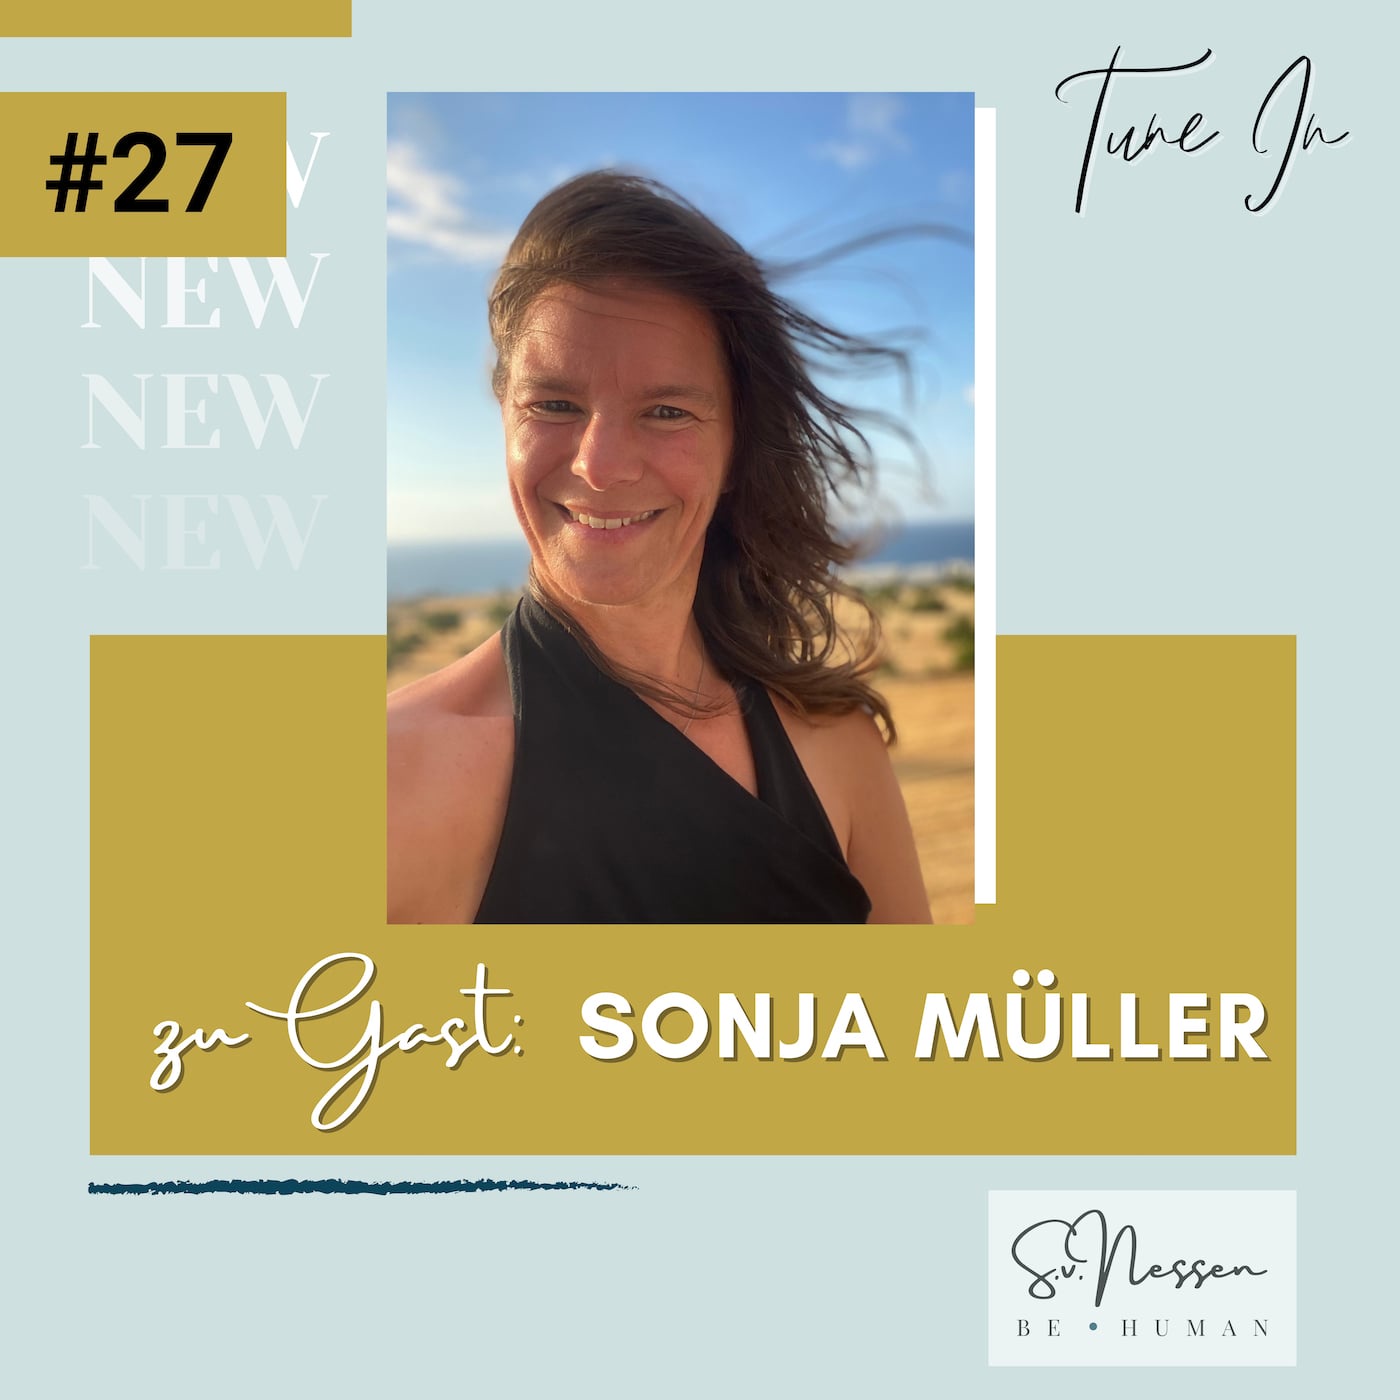 Bewusste Führung im Einklang von Körper, Geist und Seele mit Sonja Müller